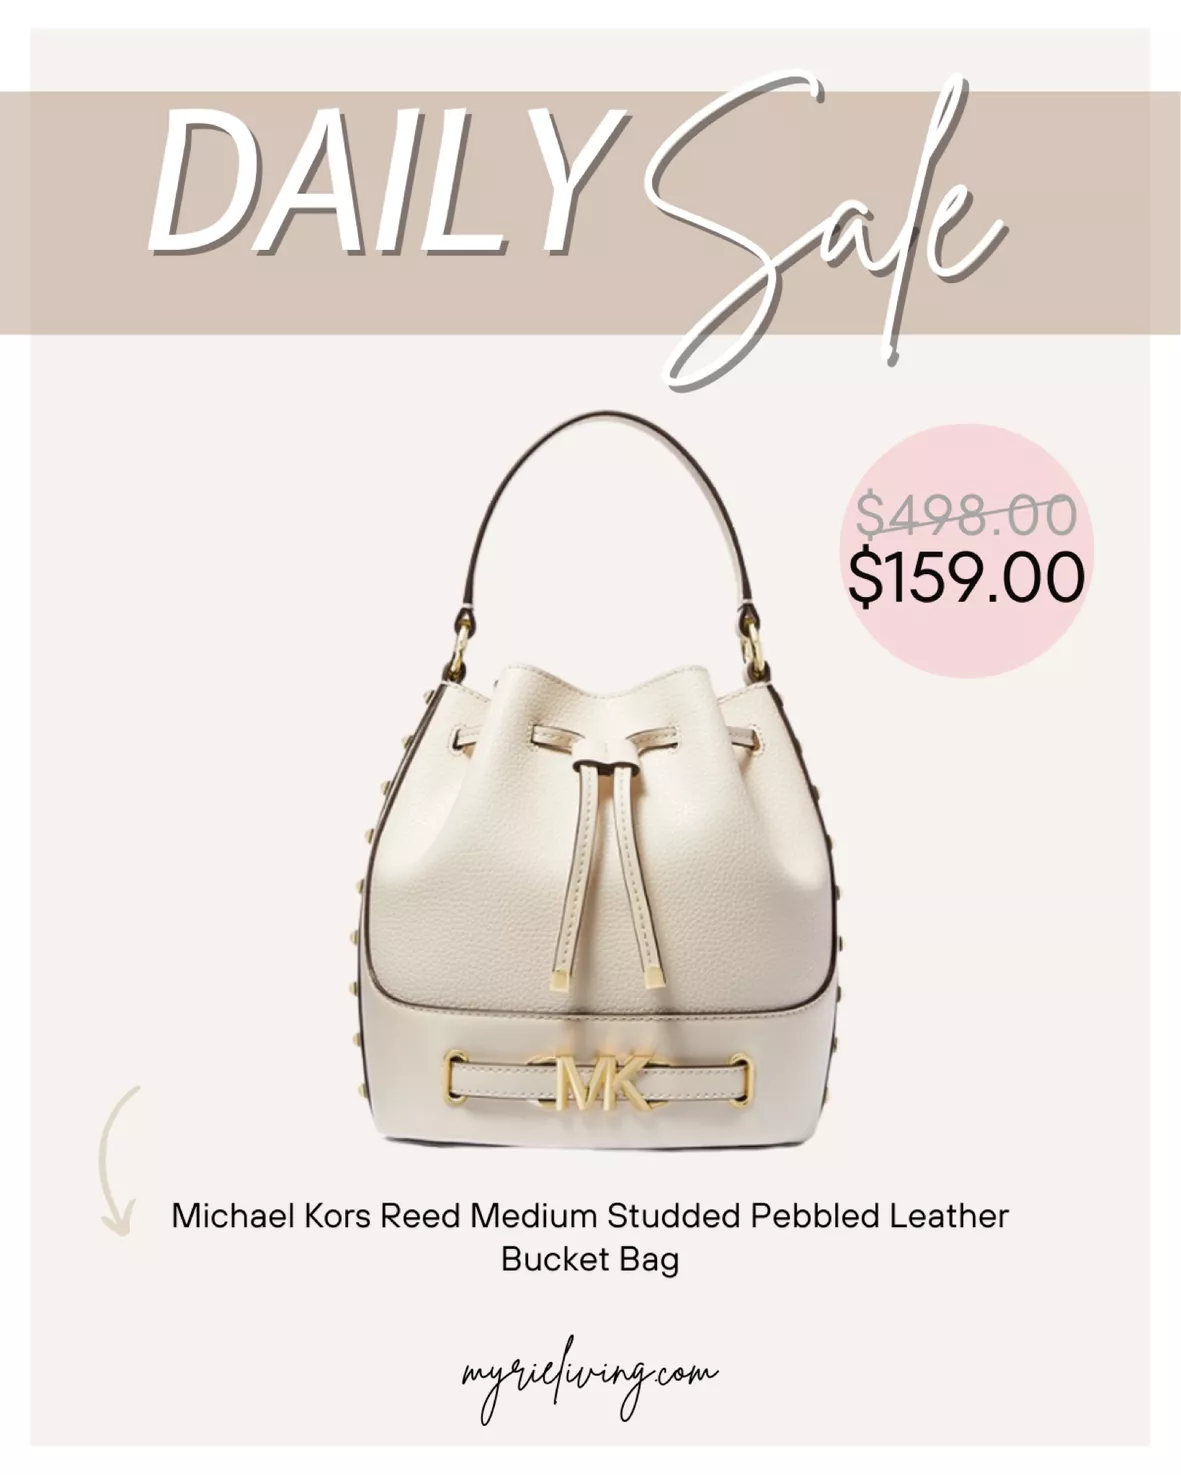 Michael Kors Reed Medium Studded Pebbled Leather Bucket Bag